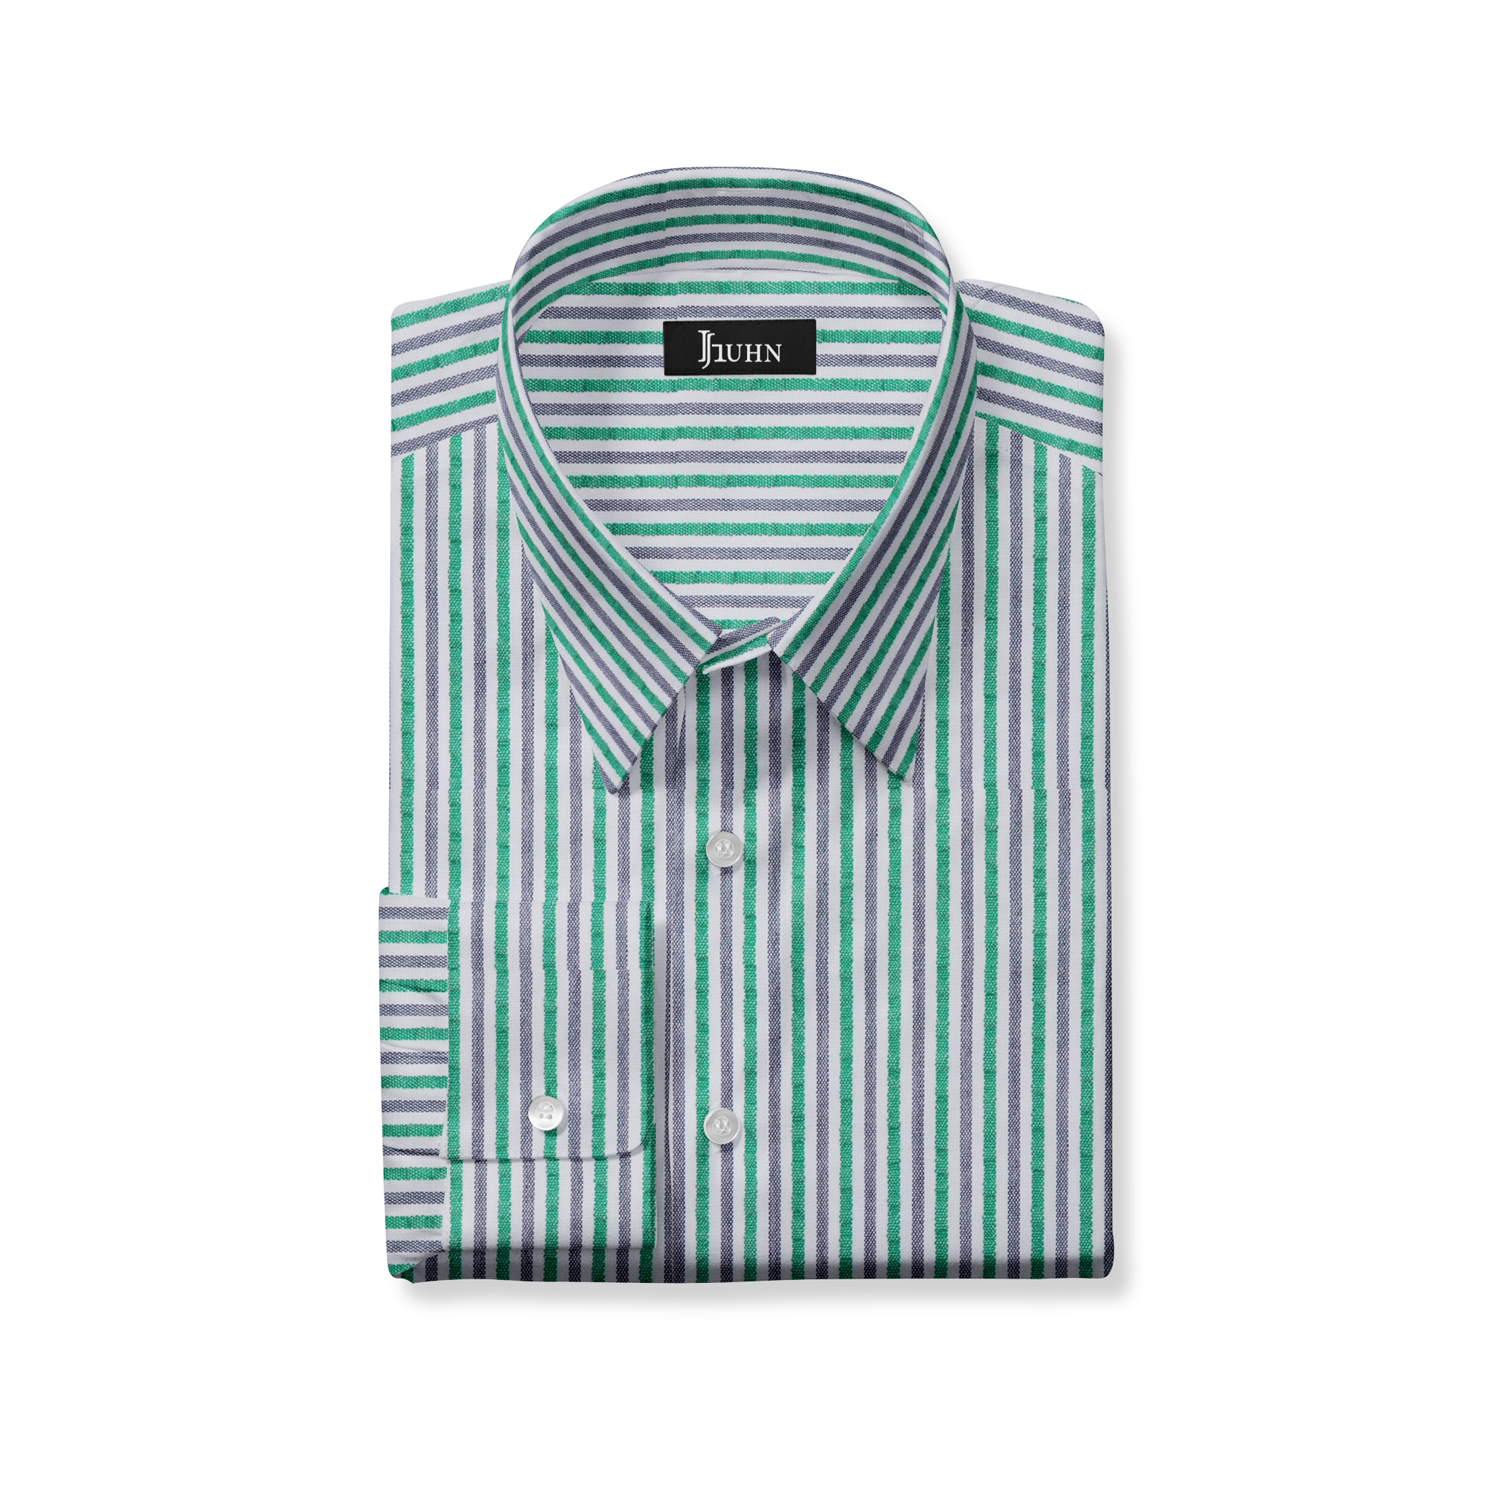 Seersucker Men's Shirt in Green Stripe